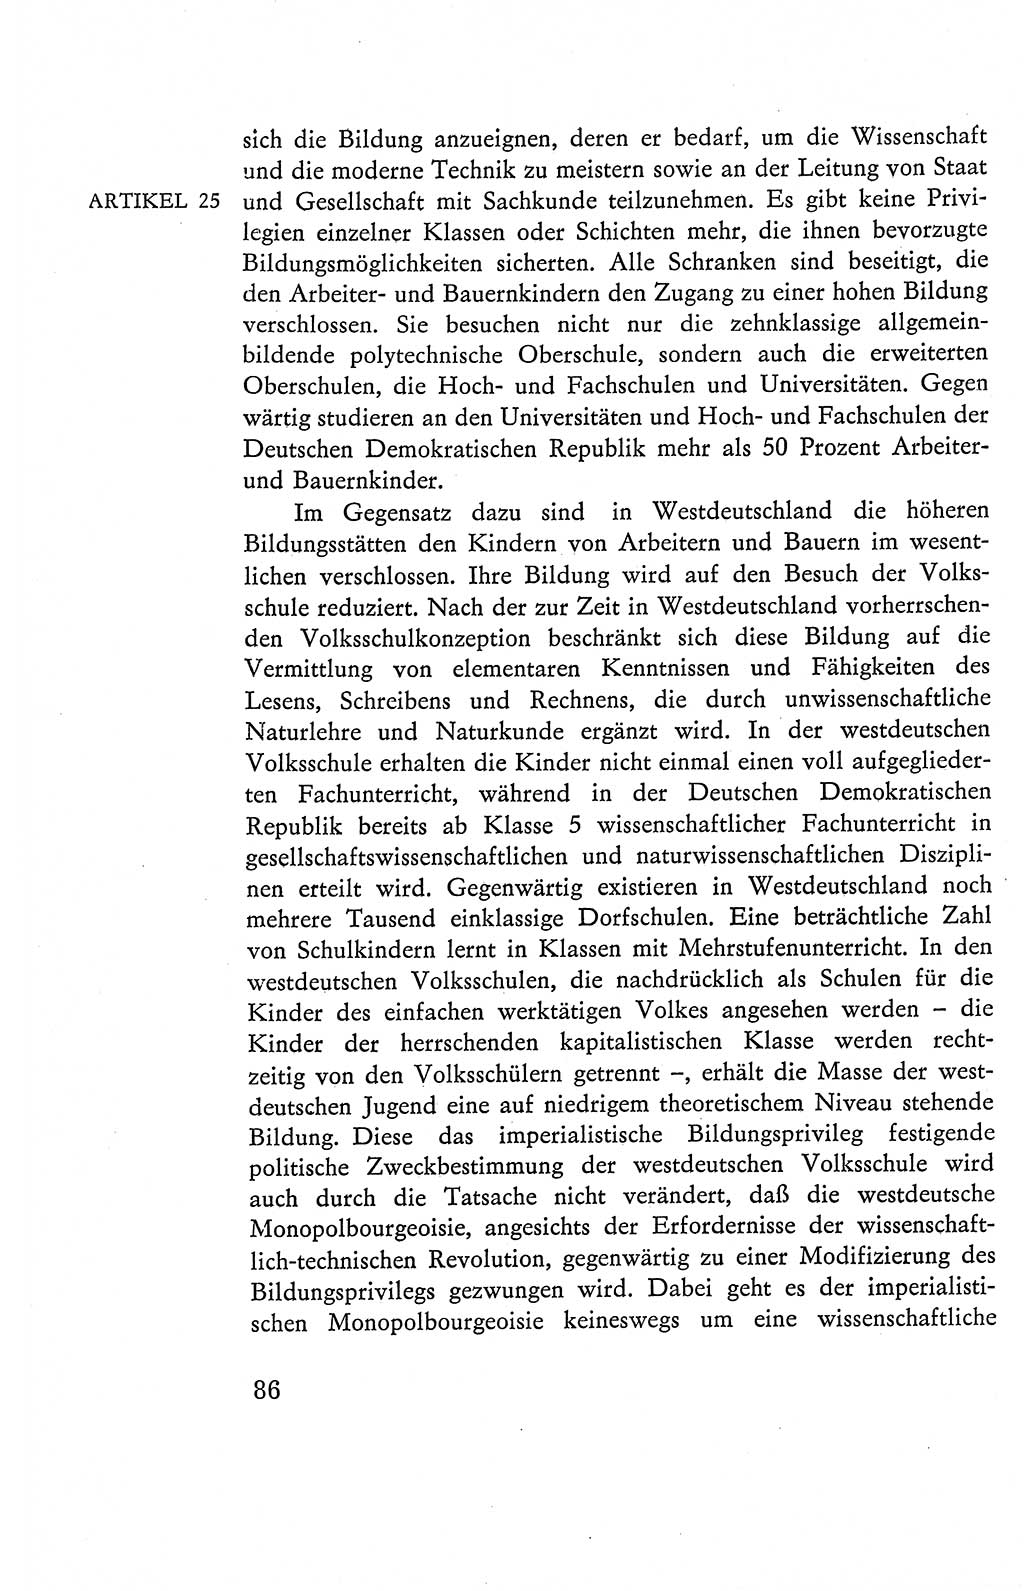 Verfassung der Deutschen Demokratischen Republik (DDR), Dokumente, Kommentar 1969, Band 2, Seite 86 (Verf. DDR Dok. Komm. 1969, Bd. 2, S. 86)